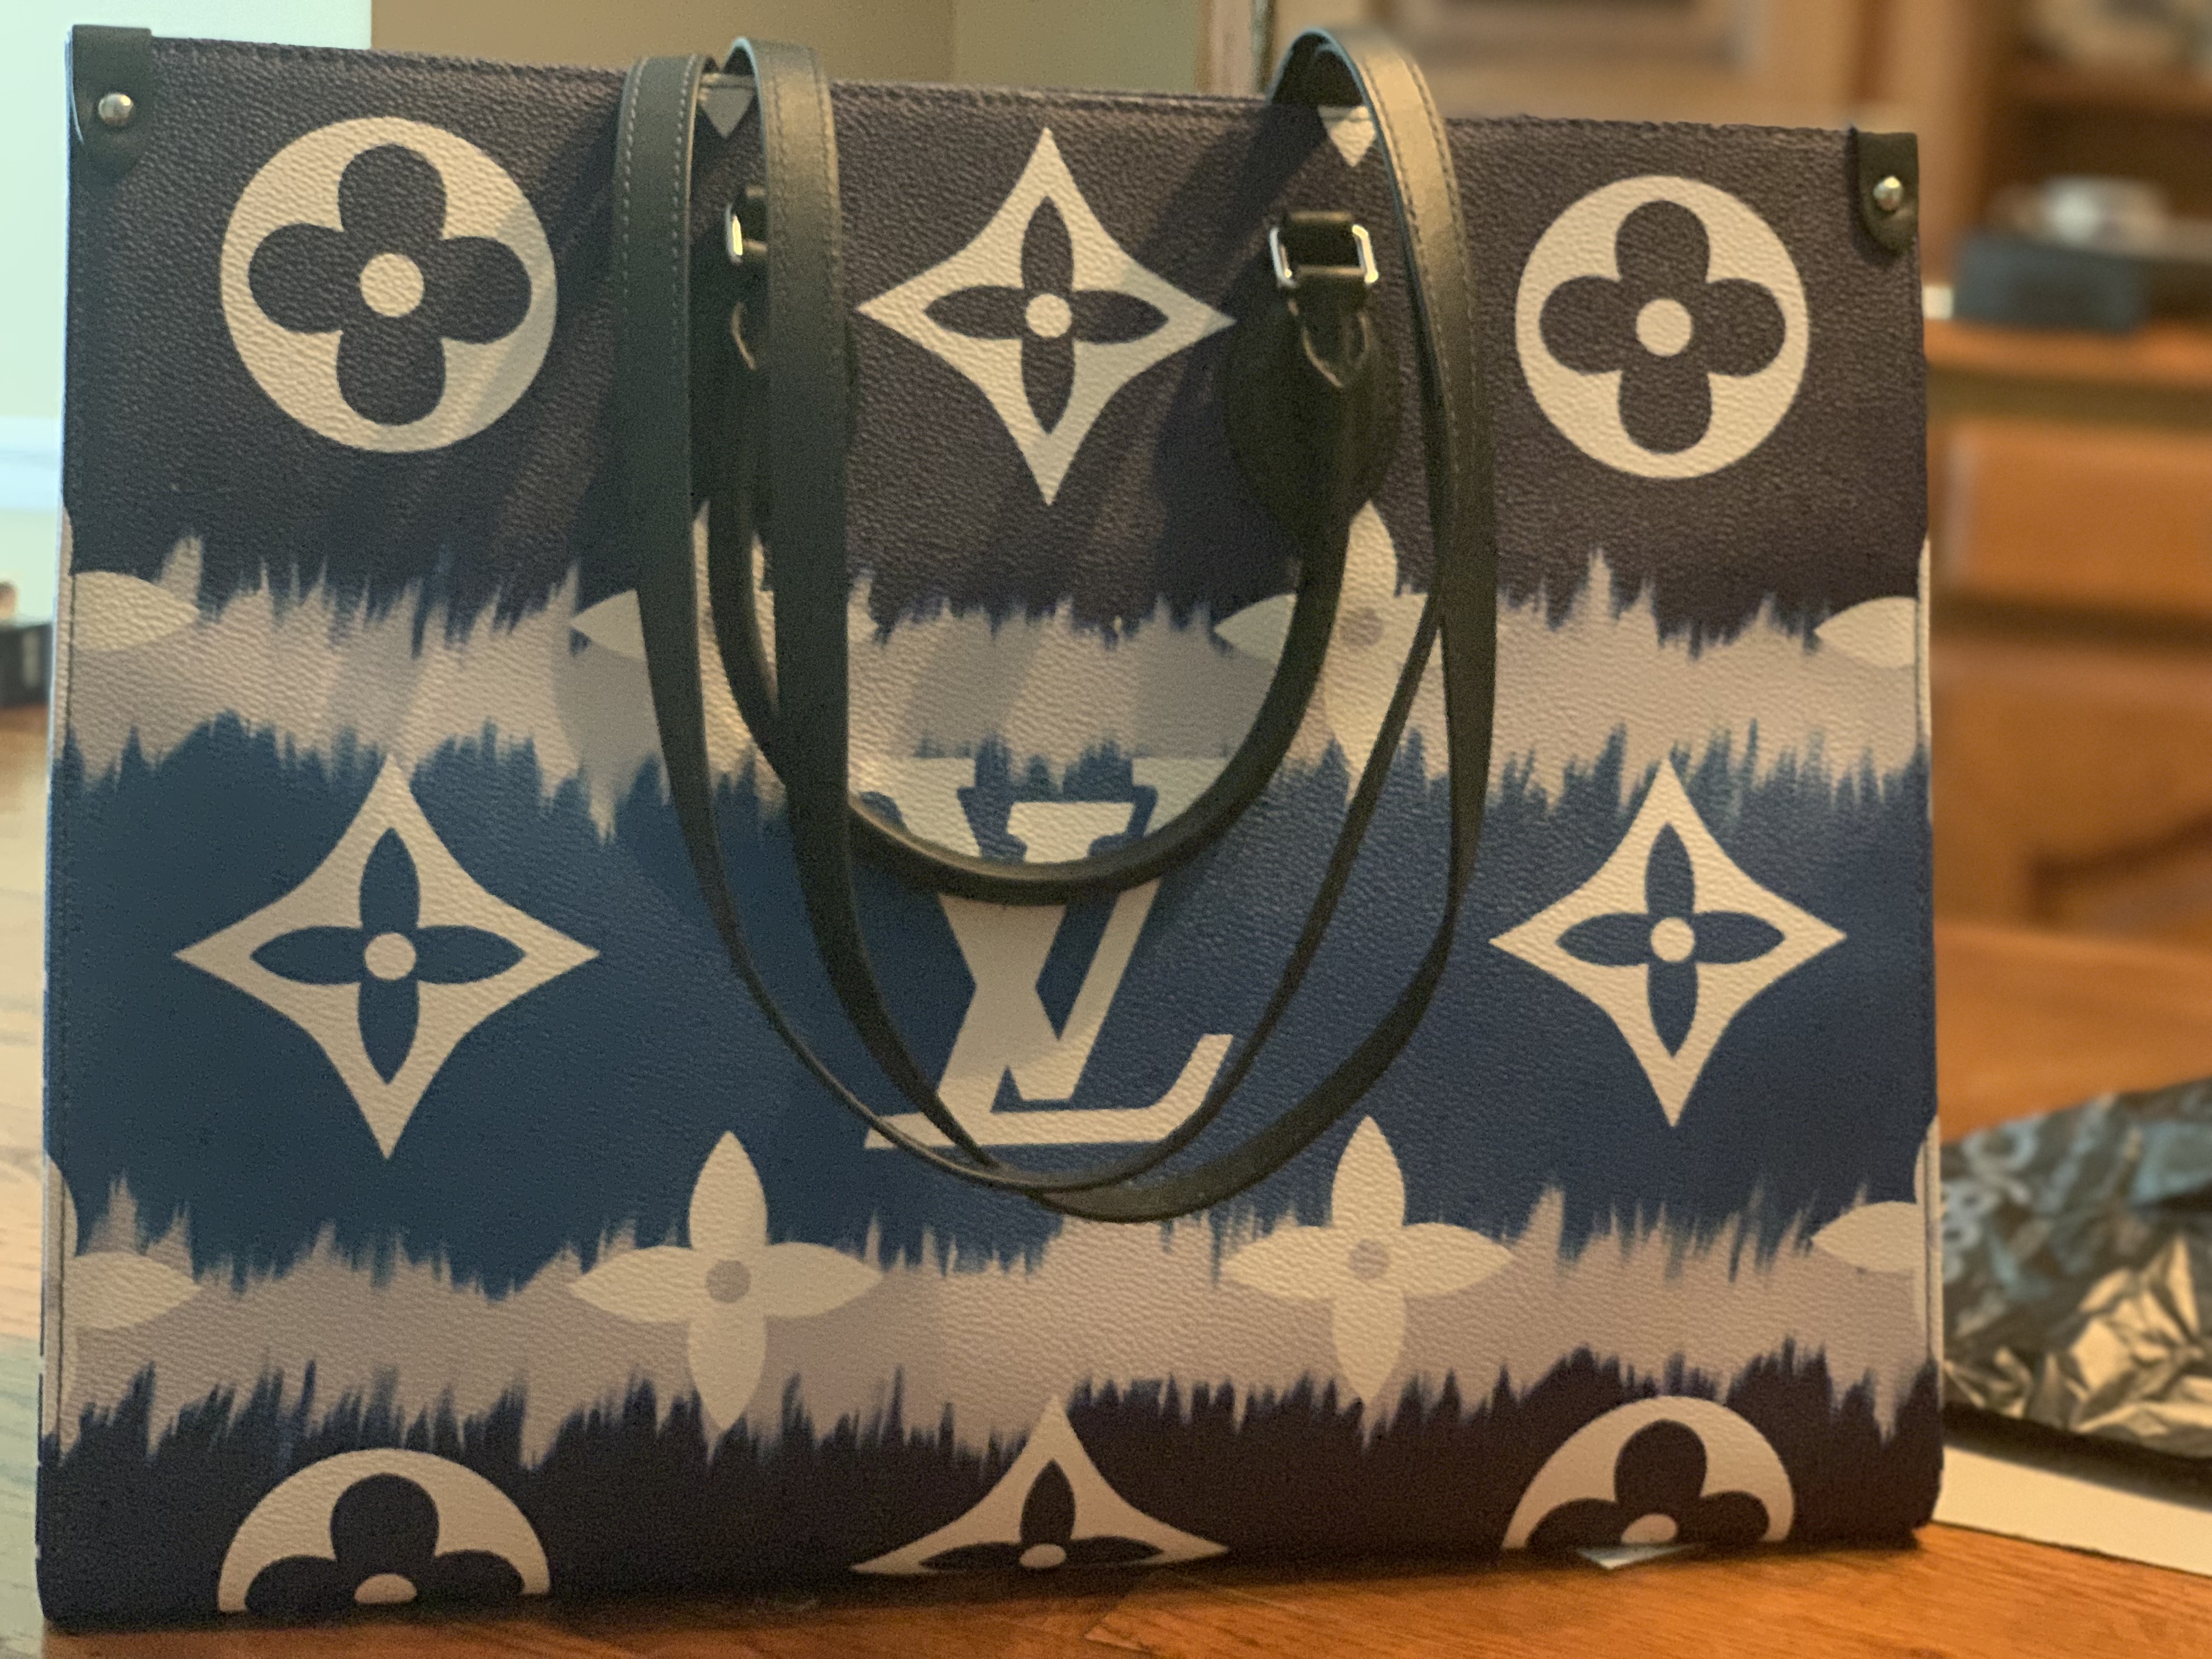 Louis Vuitton Handbag Styles – LuxeDH